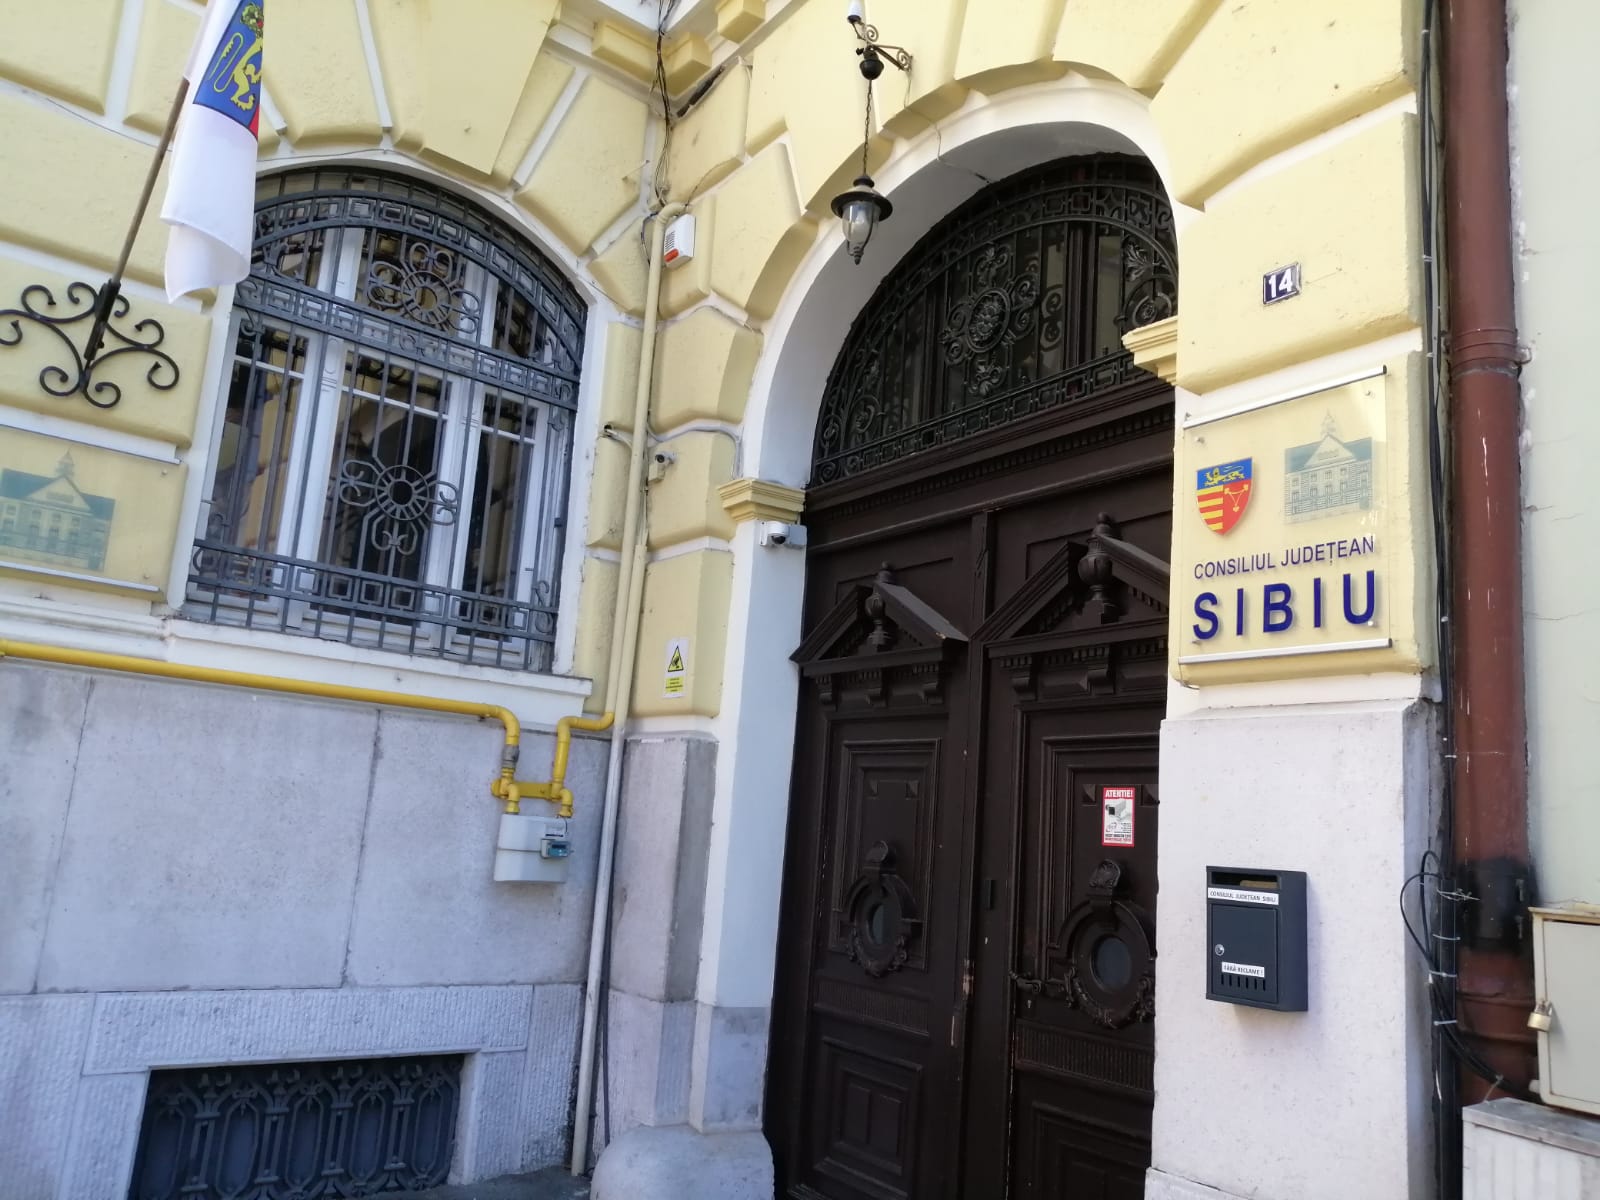 Proiectul de buget pe anul 2021, pus în consultare publică de Consiliul Județean Sibiu